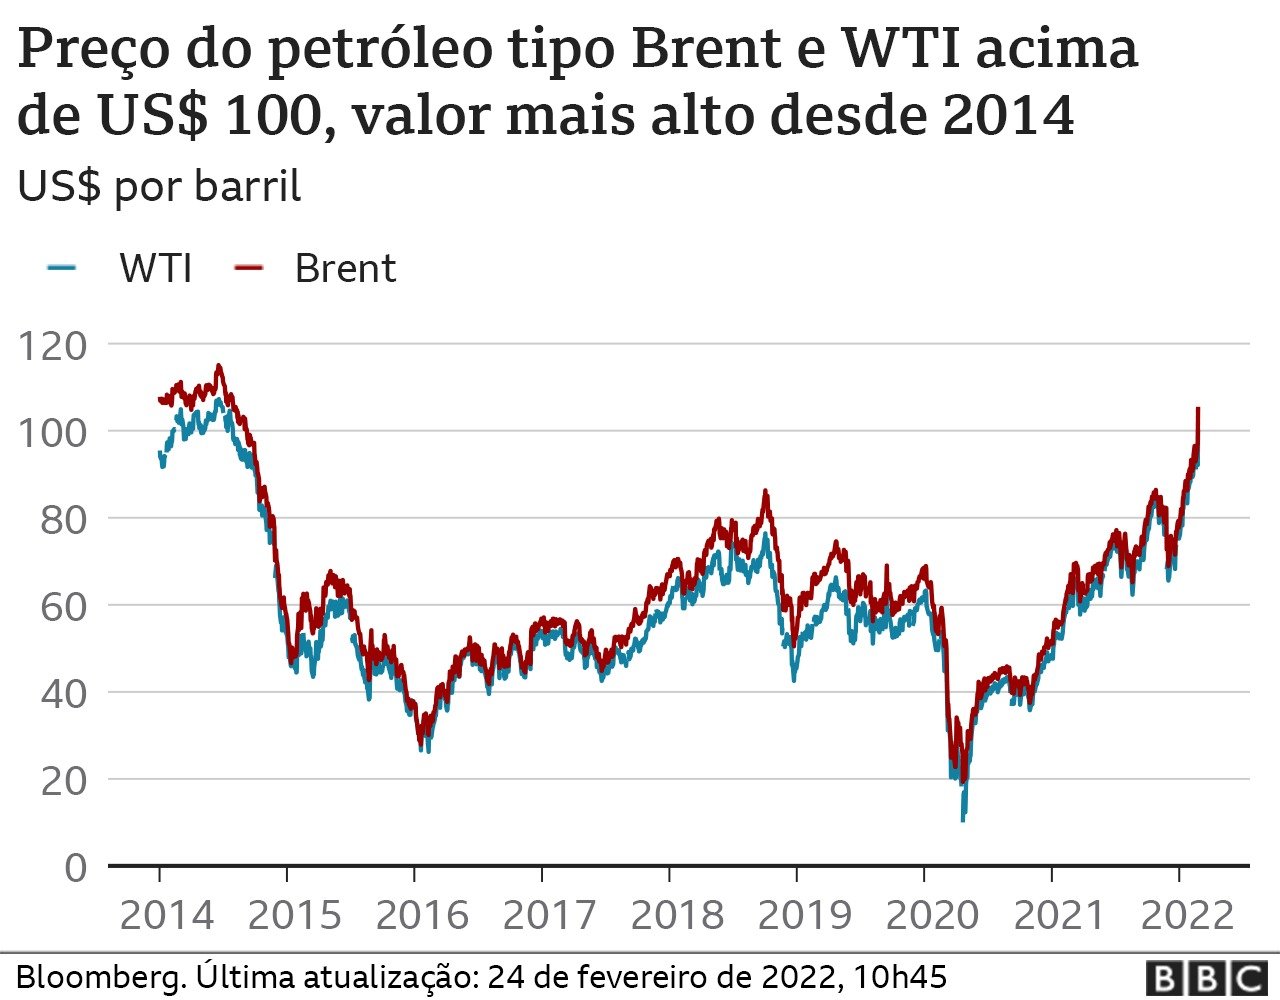 Grafico com precos do petroleo